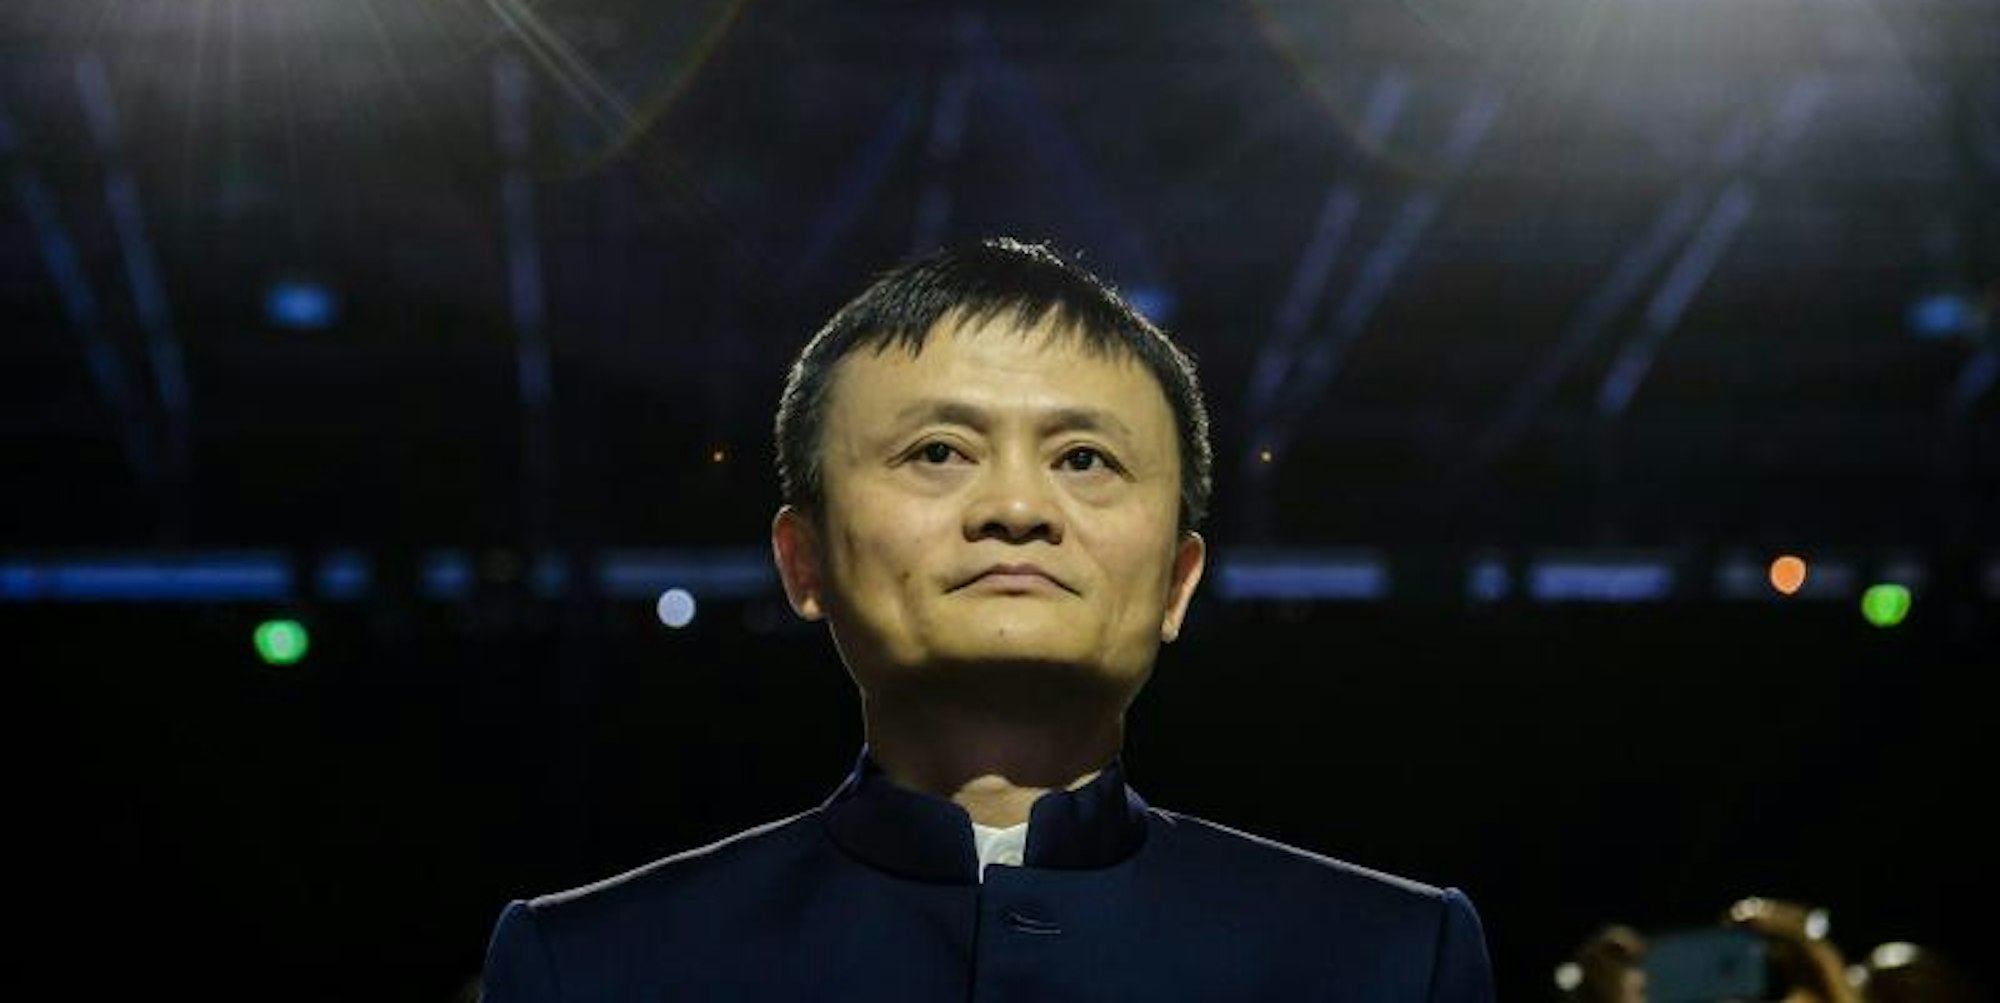 Seit Ende Oktober fehlt von Jack Ma, dem Gründer und CEO der Alibaba-Gruppe, jede Spur.